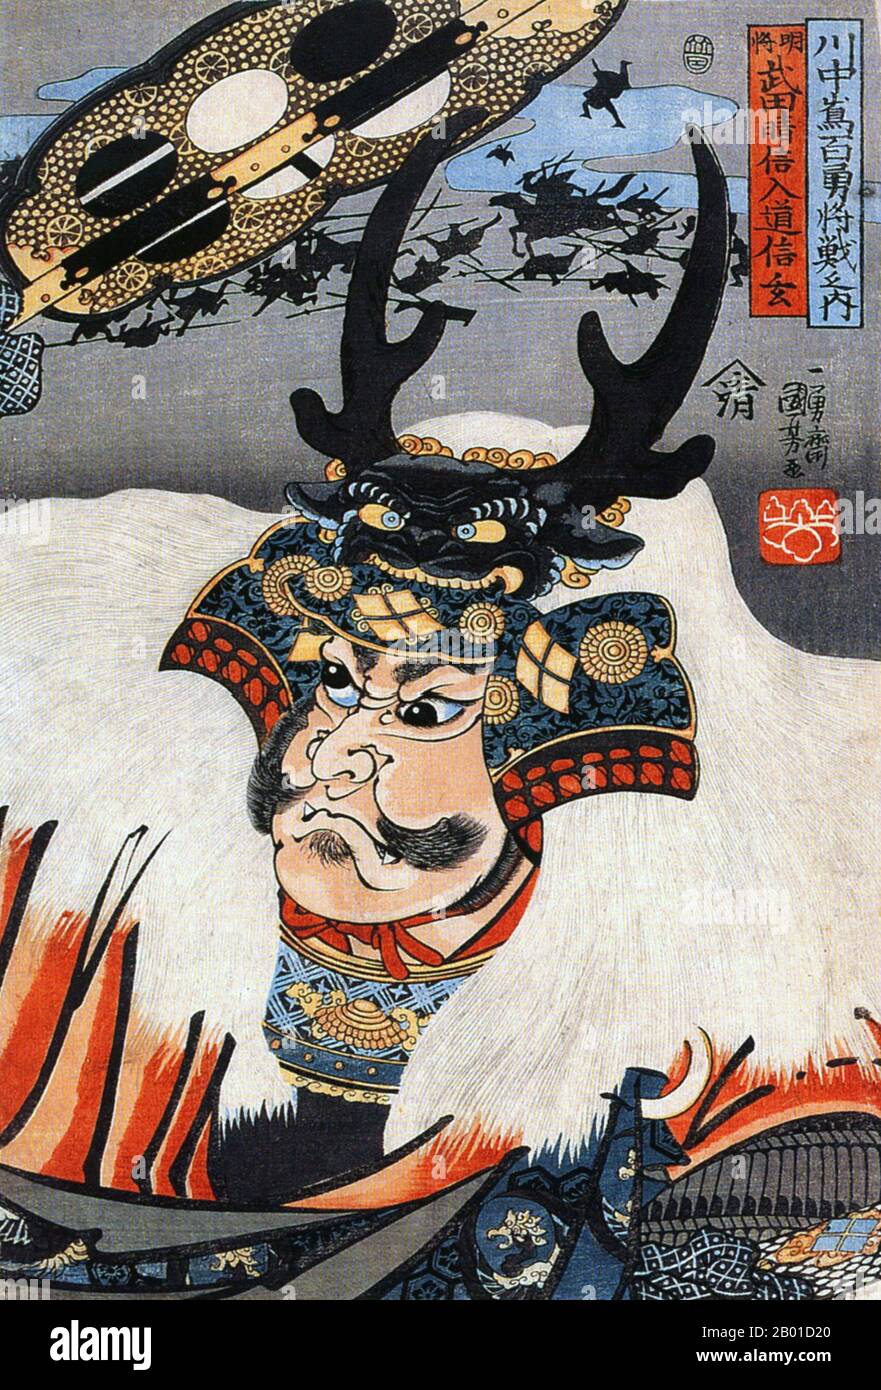 Japan: Takeda Shingen (1. Dezember 1521 - 13. Mai 1573), Sengoku-Periode daimyo. Ukiyo-e Holzschnitt von Utagawa Kuniyoshi (1798-1861), c. 1843-1847. Takeda Shingen aus der Provinz Kai, geboren als Katsuchiyo und formaler Name Harunobu, war ein mächtiger Daimyo im feudalen Japan während der späten Sengoku-Zeit. Er wurde als „Tiger of Kai“ bezeichnet und war ein Kriegsherr mit erstaunlichen Fähigkeiten und taktischen Fähigkeiten. Schon in jungen Jahren war er ehrgeizig und eroberte die benachbarte Provinz Shinano über einen Zeitraum von zehn Jahren methodisch. Er war der einzige Daimyo, der mächtig und geschickt genug war, um Oda Nobunagas Pläne zur Herrschaft über Japan zu stoppen. Stockfoto